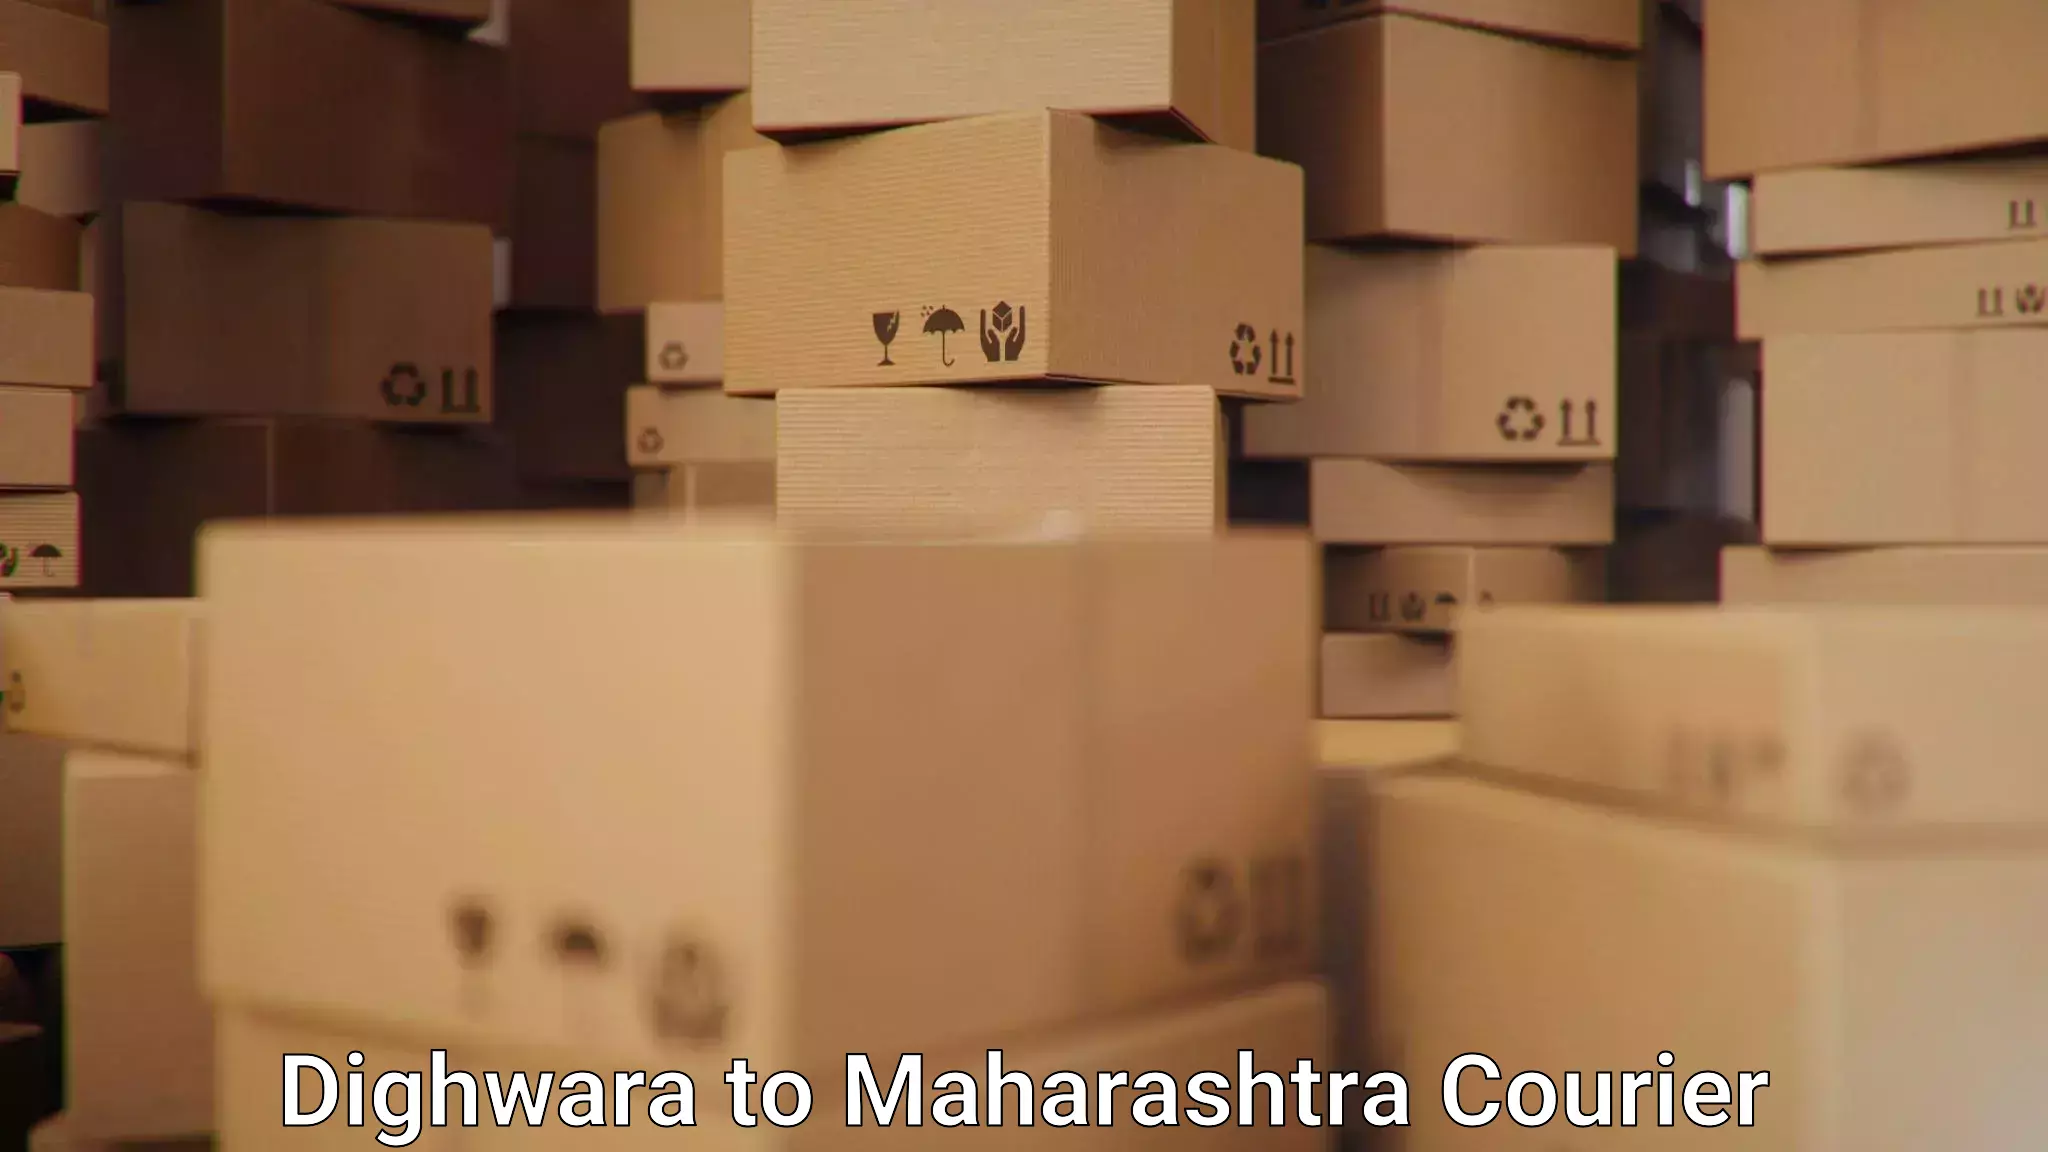 Secure shipping methods Dighwara to Karjat